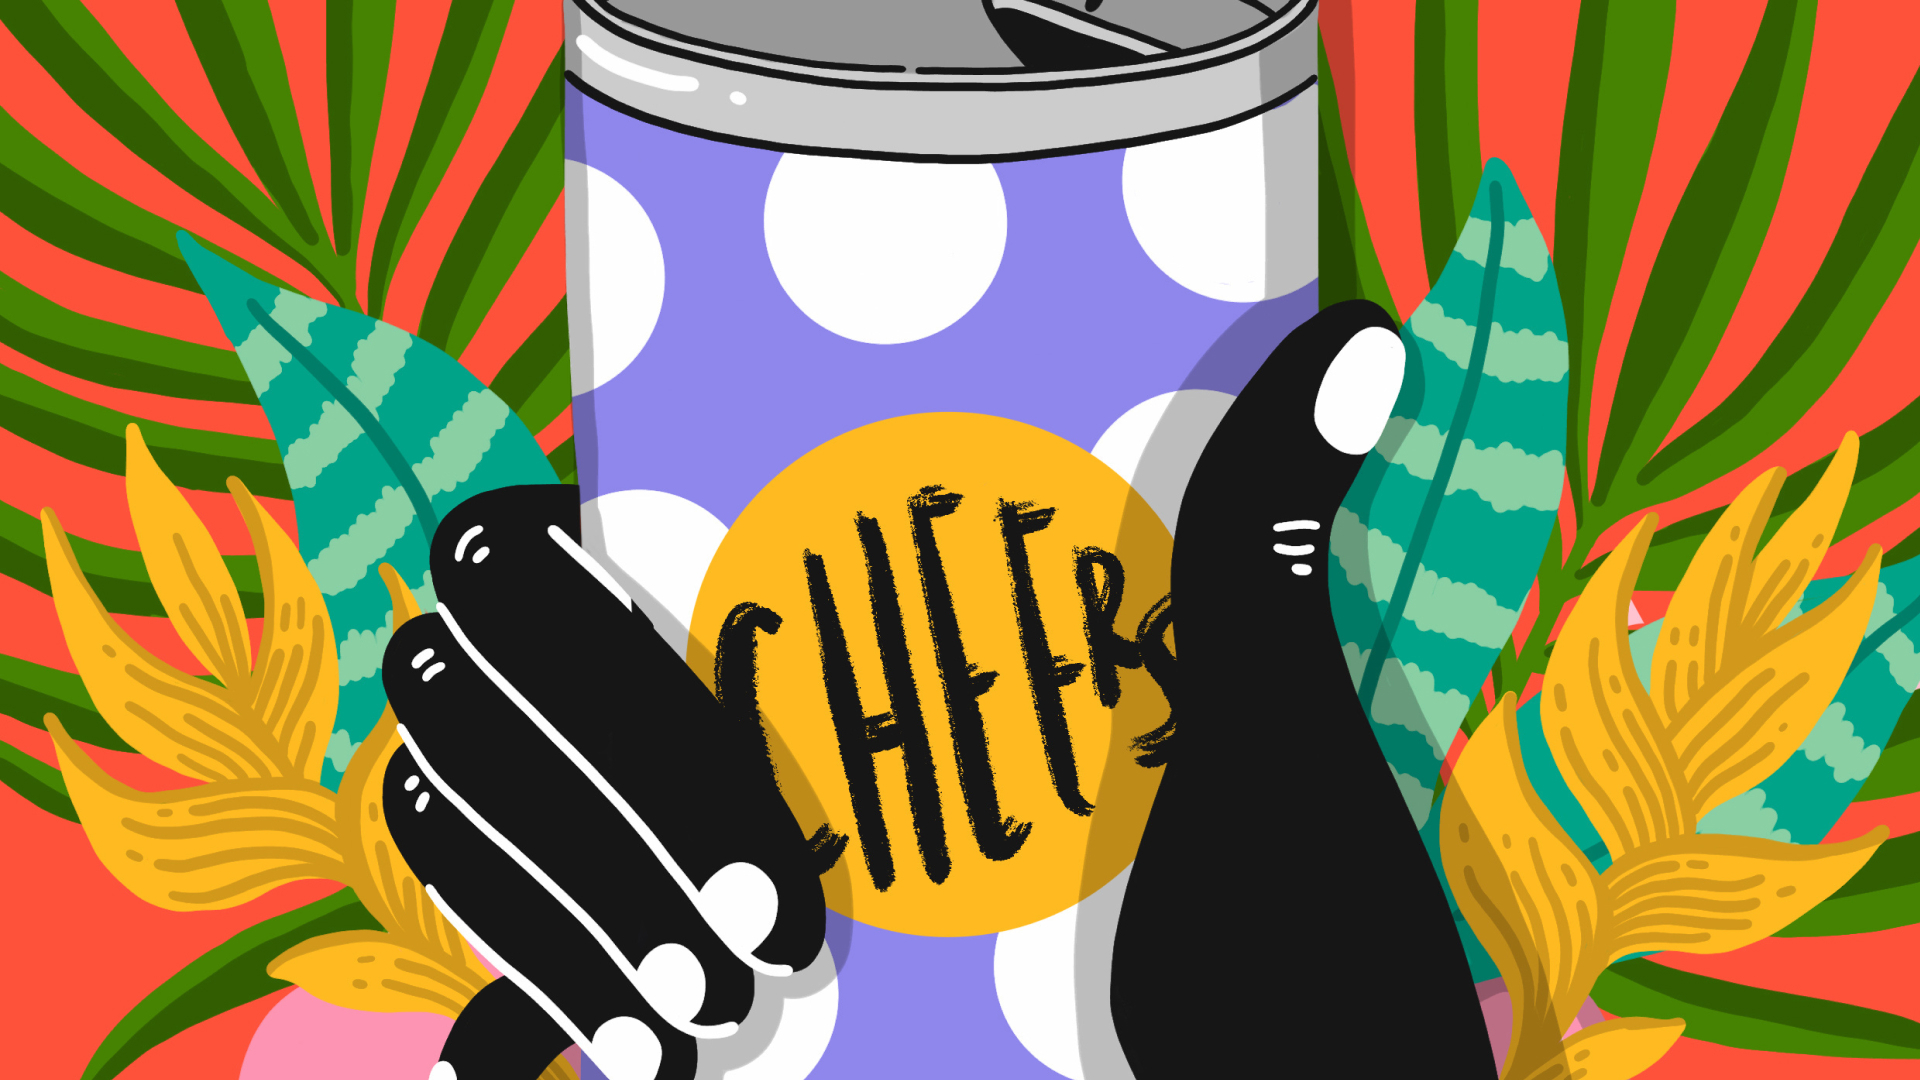 Ilustración colorida de una mano sosteniendo una lata en la que se lee “¡salud!” en inglés